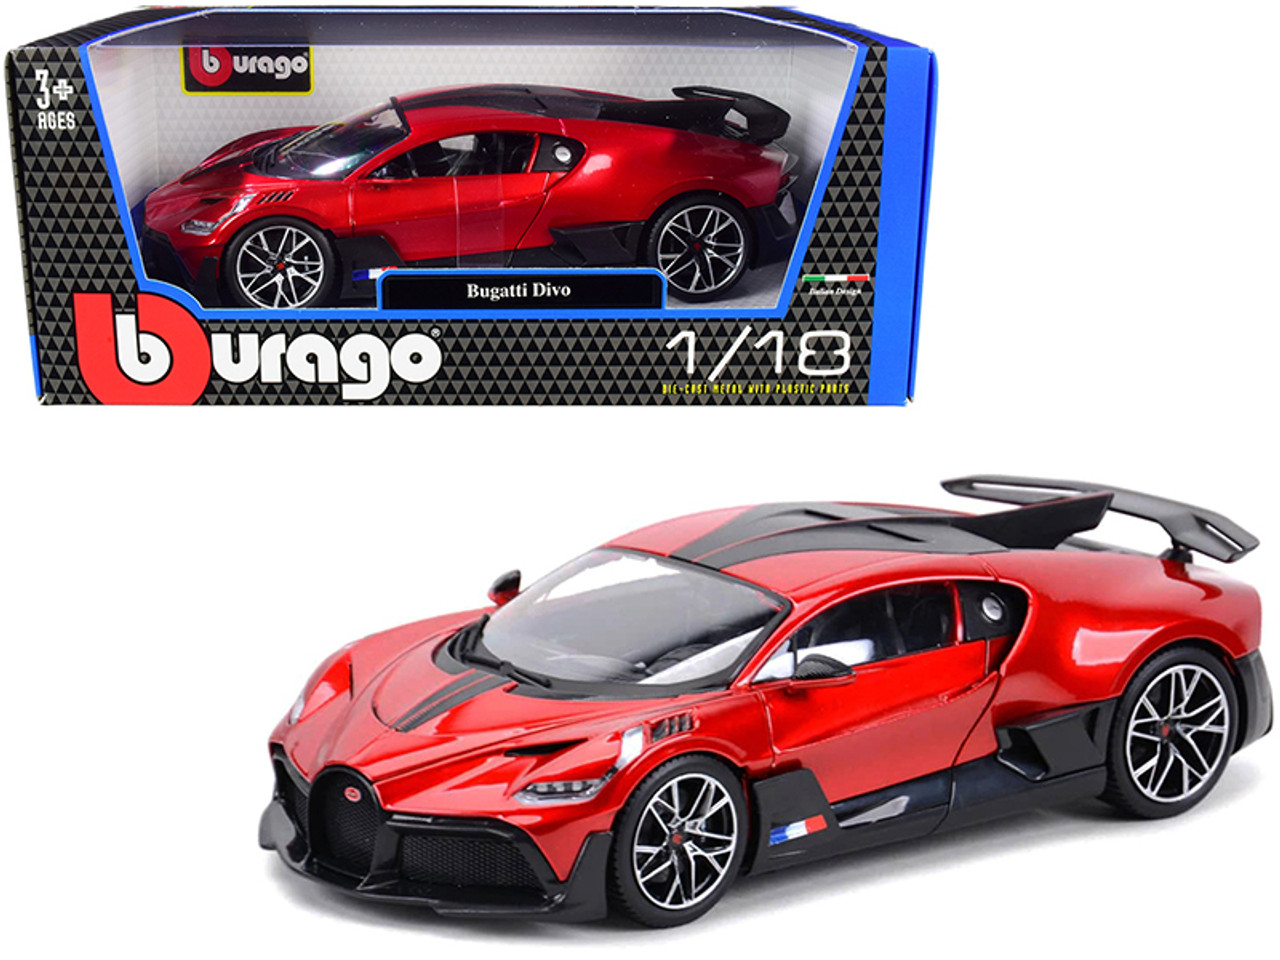 1/18 BBurago Bugatti Divo (Red Metallic with Carbon Accents) Diecast Car Model